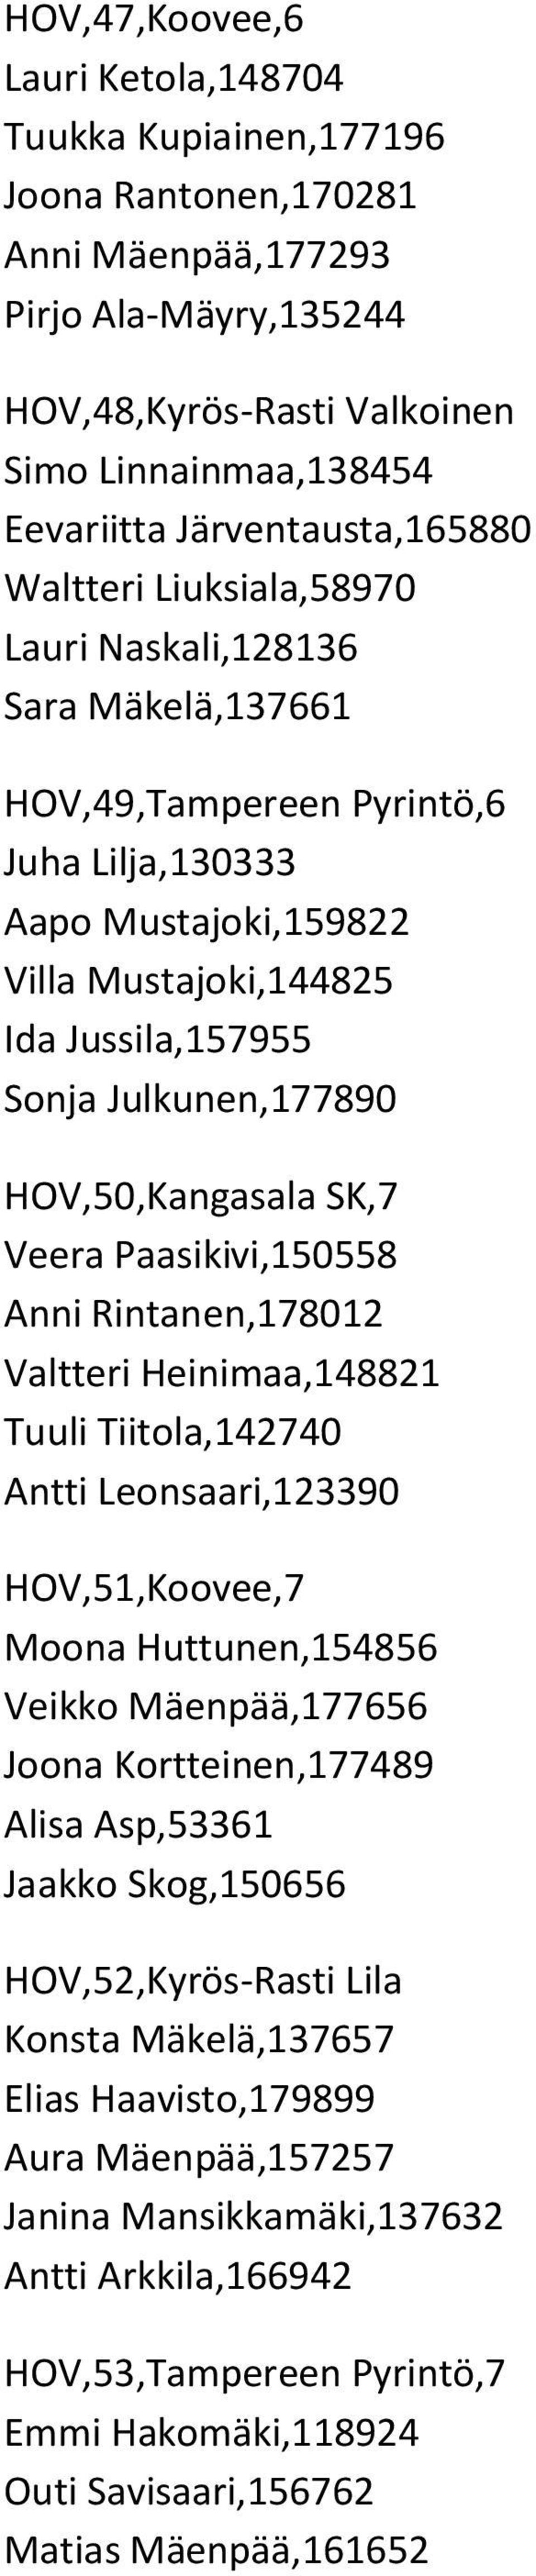 Julkunen,177890 HOV,50,Kangasala SK,7 Veera Paasikivi,150558 Anni Rintanen,178012 Valtteri Heinimaa,148821 Tuuli Tiitola,142740 Antti Leonsaari,123390 HOV,51,Koovee,7 Moona Huttunen,154856 Veikko